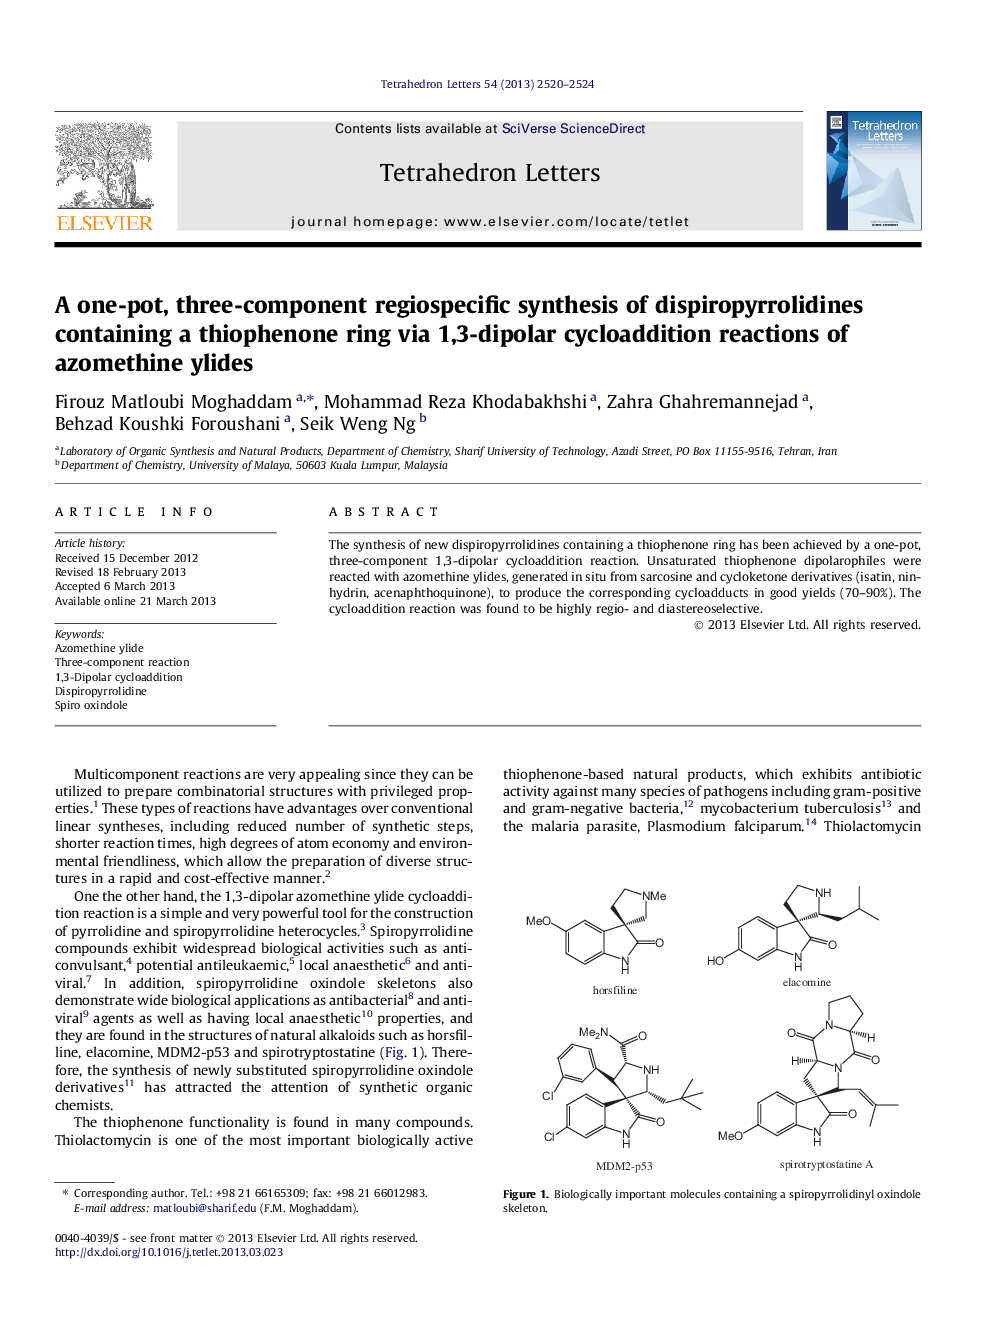 یک سنتز ریزساختار سه جزء دیسپروپیریرلیدین حاوی یک حلقه تیوفنون با استفاده از واکنش سیکلوسپرتزی 1،3-دیوپورهای آزومتیین ییلید 